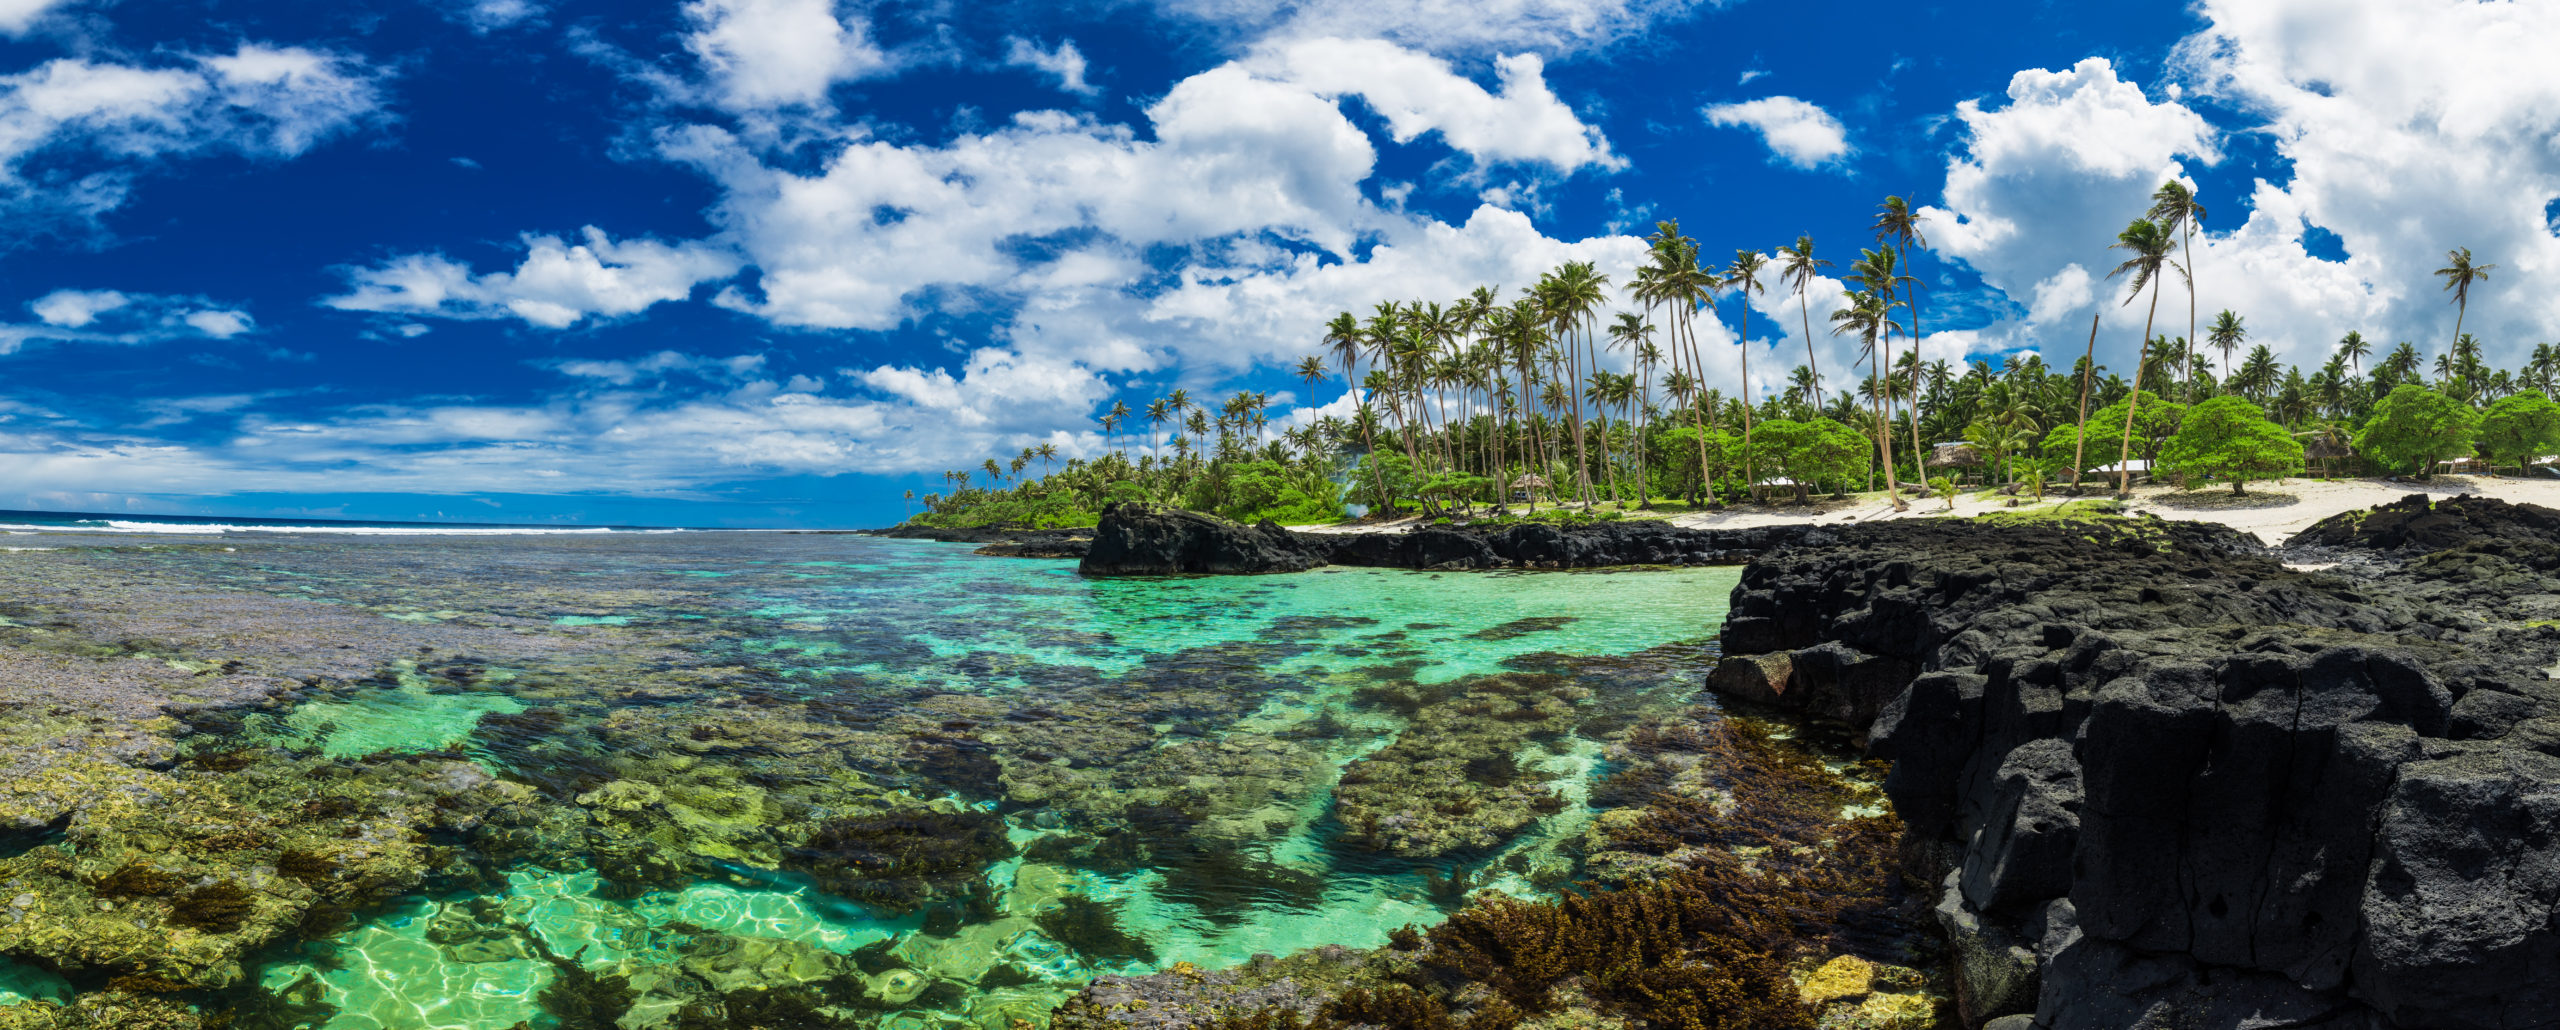 Samoa. [Shutterstock]